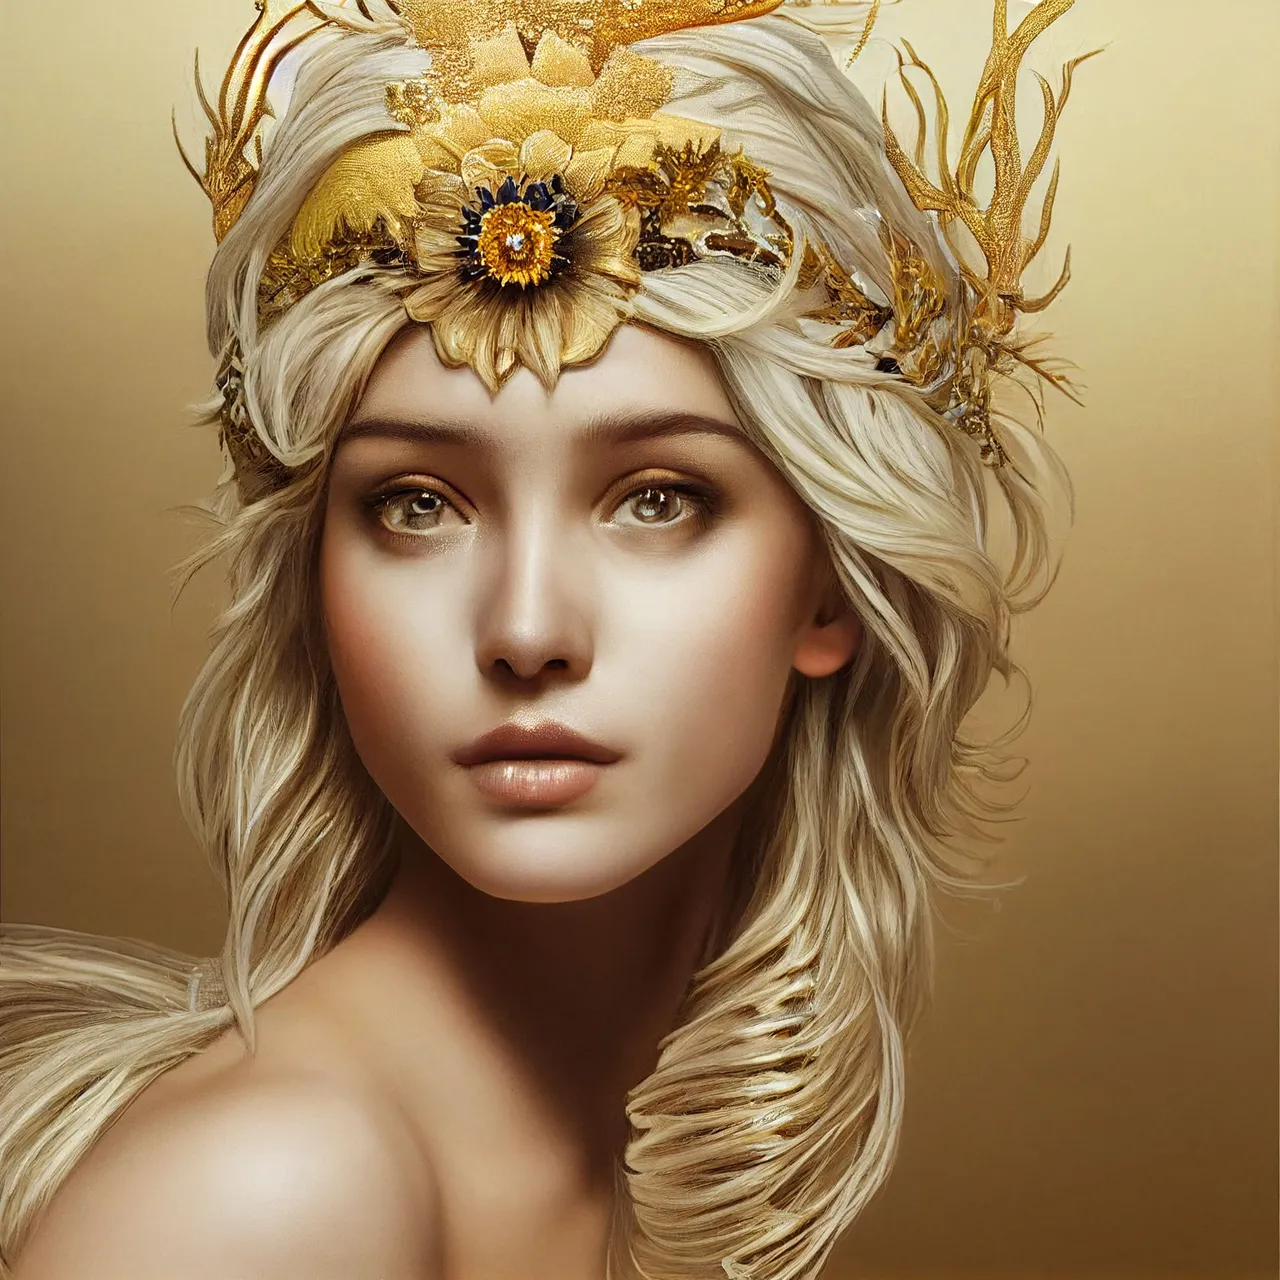 mamrita_wild_goddess_in_white_dress_golden_shimmer_blond_a5fd87a3-1626-402e-b54e-4a4d30219264.png